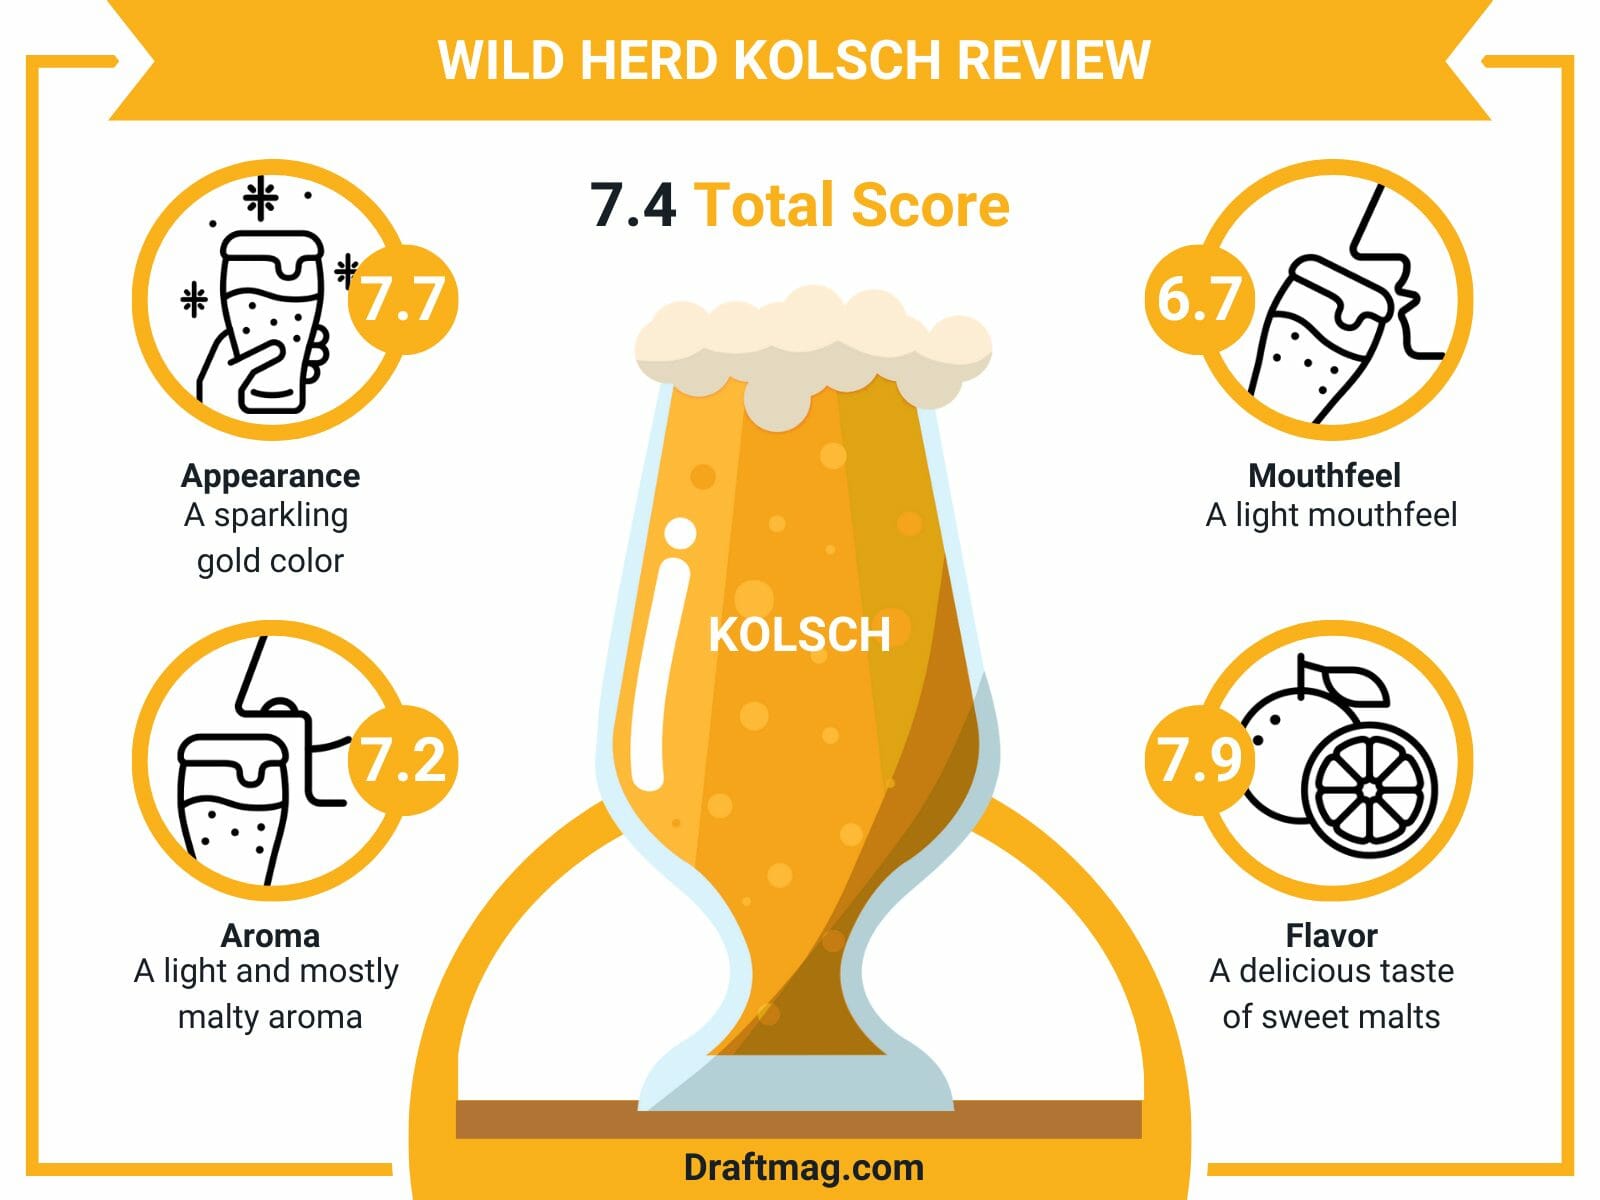 Wild herd kolsch review infographics